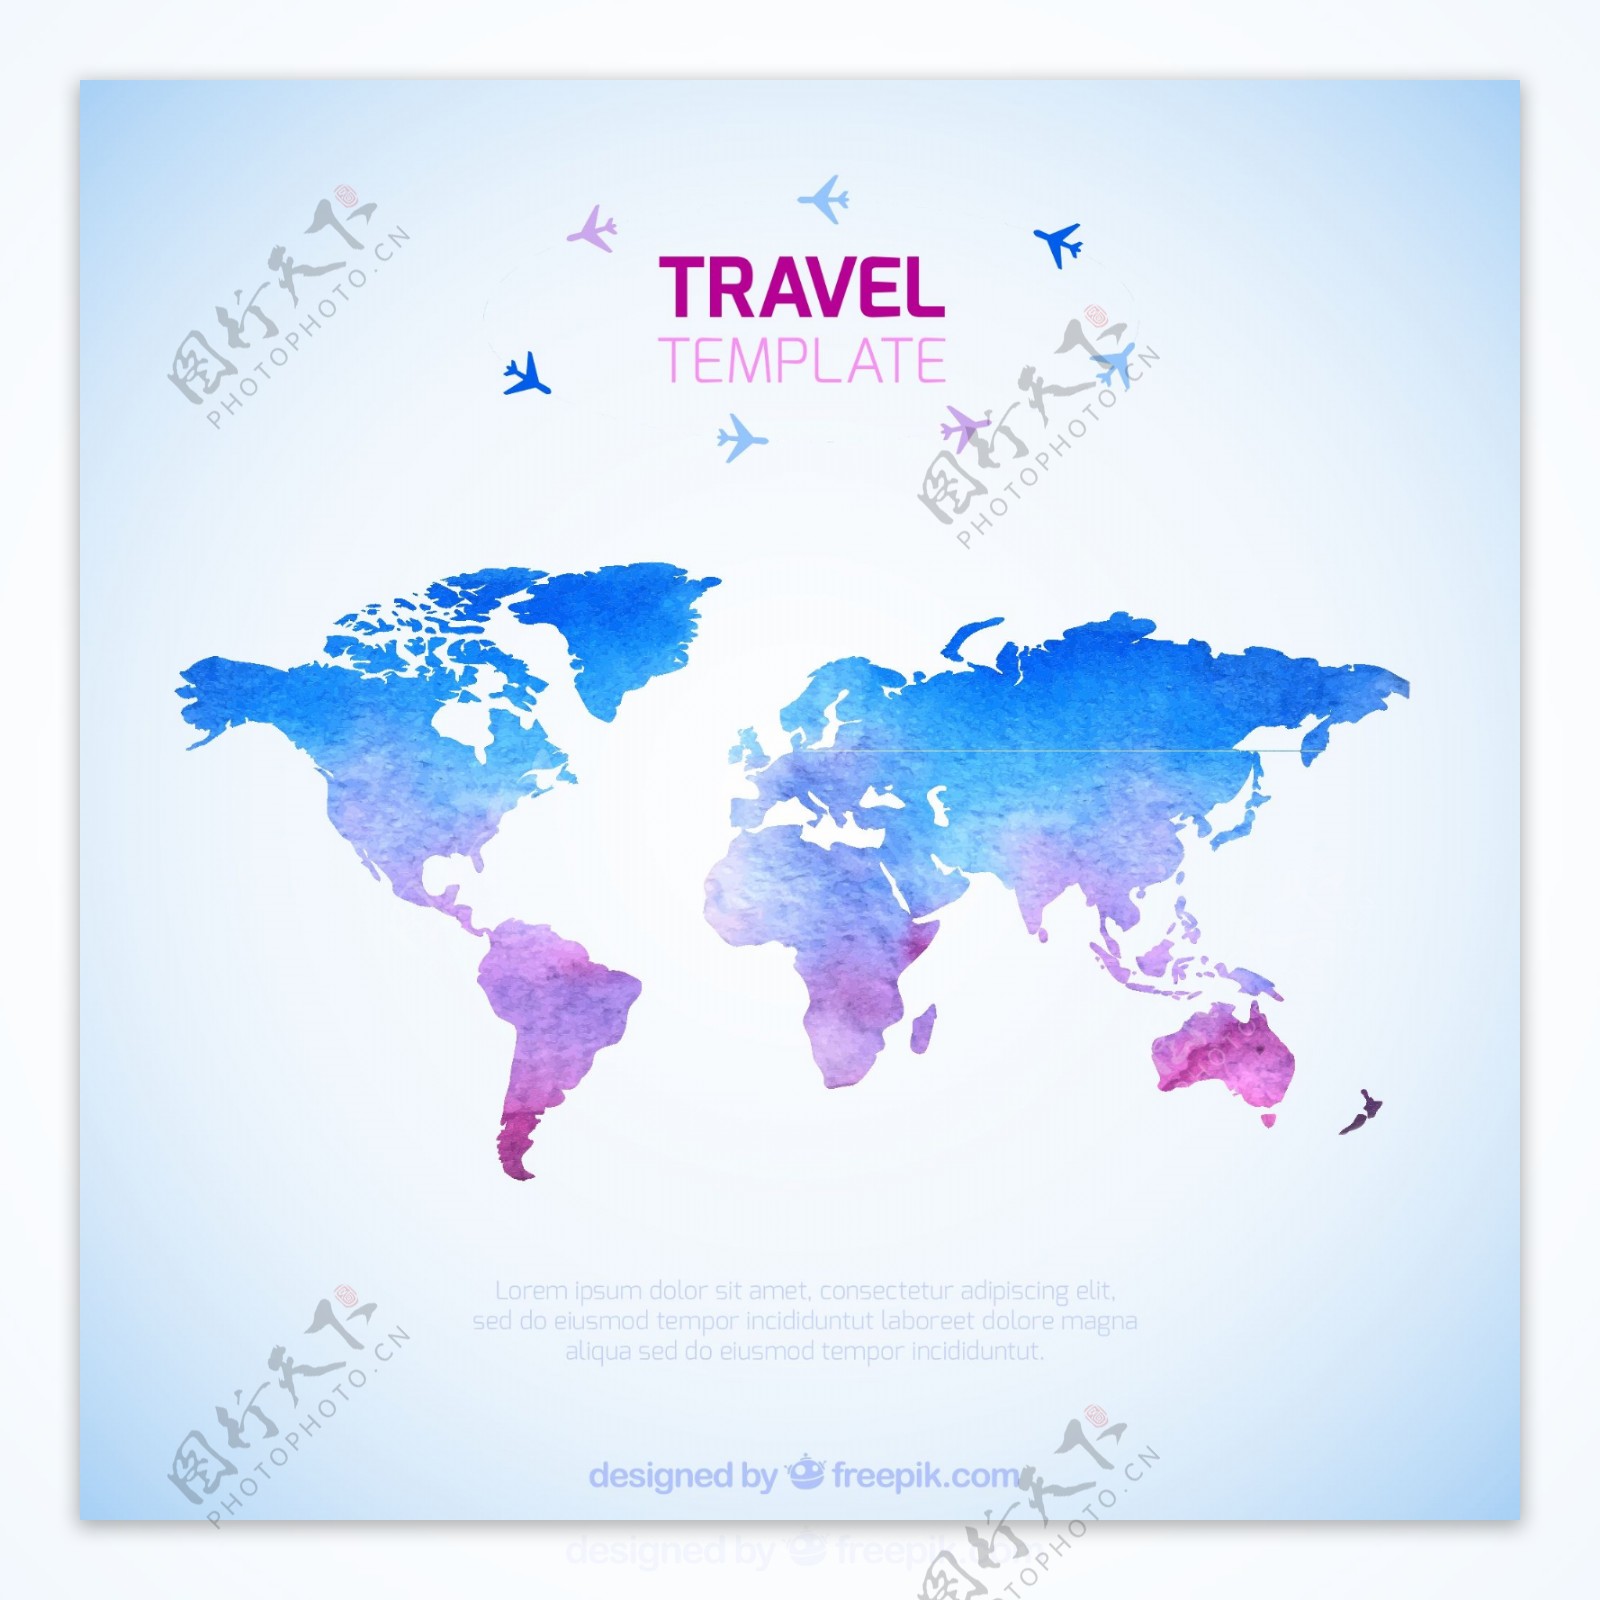 彩色环球旅行世界地图矢量素材